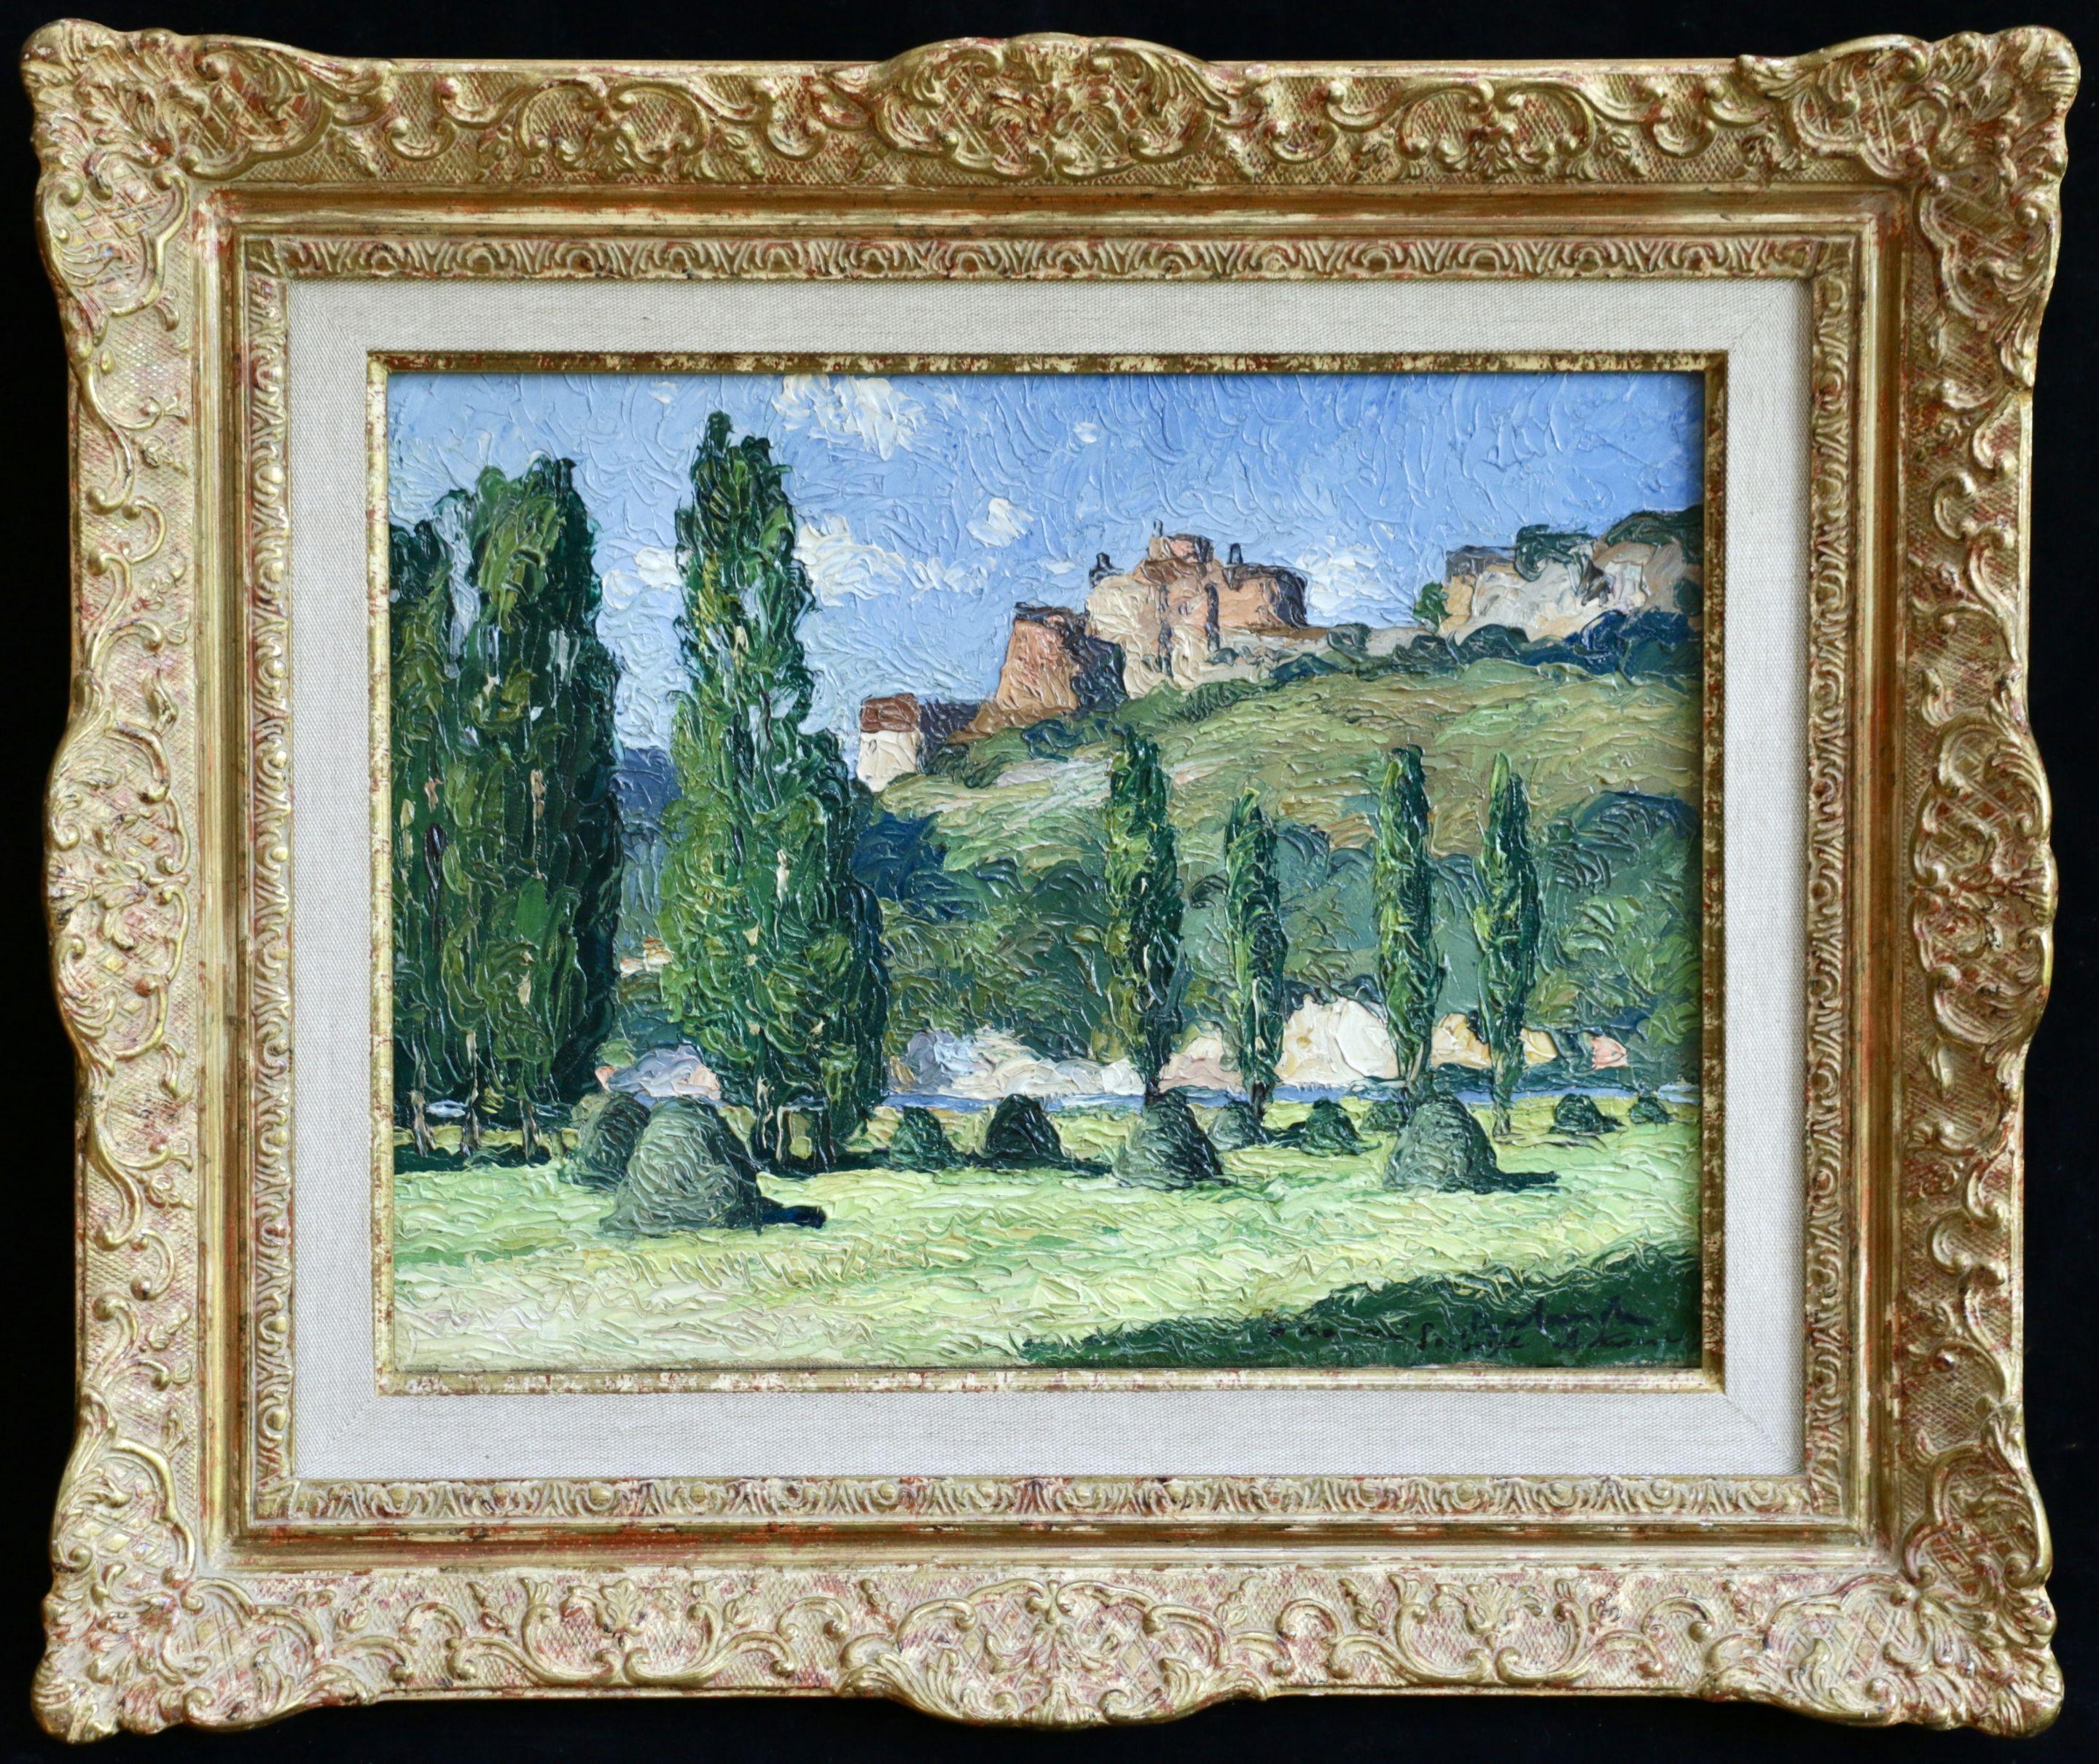 Le Chateau de Castelnaud- 20th Century Oil, French Castle Landscape by G Balande - Painting by Gaston Balande